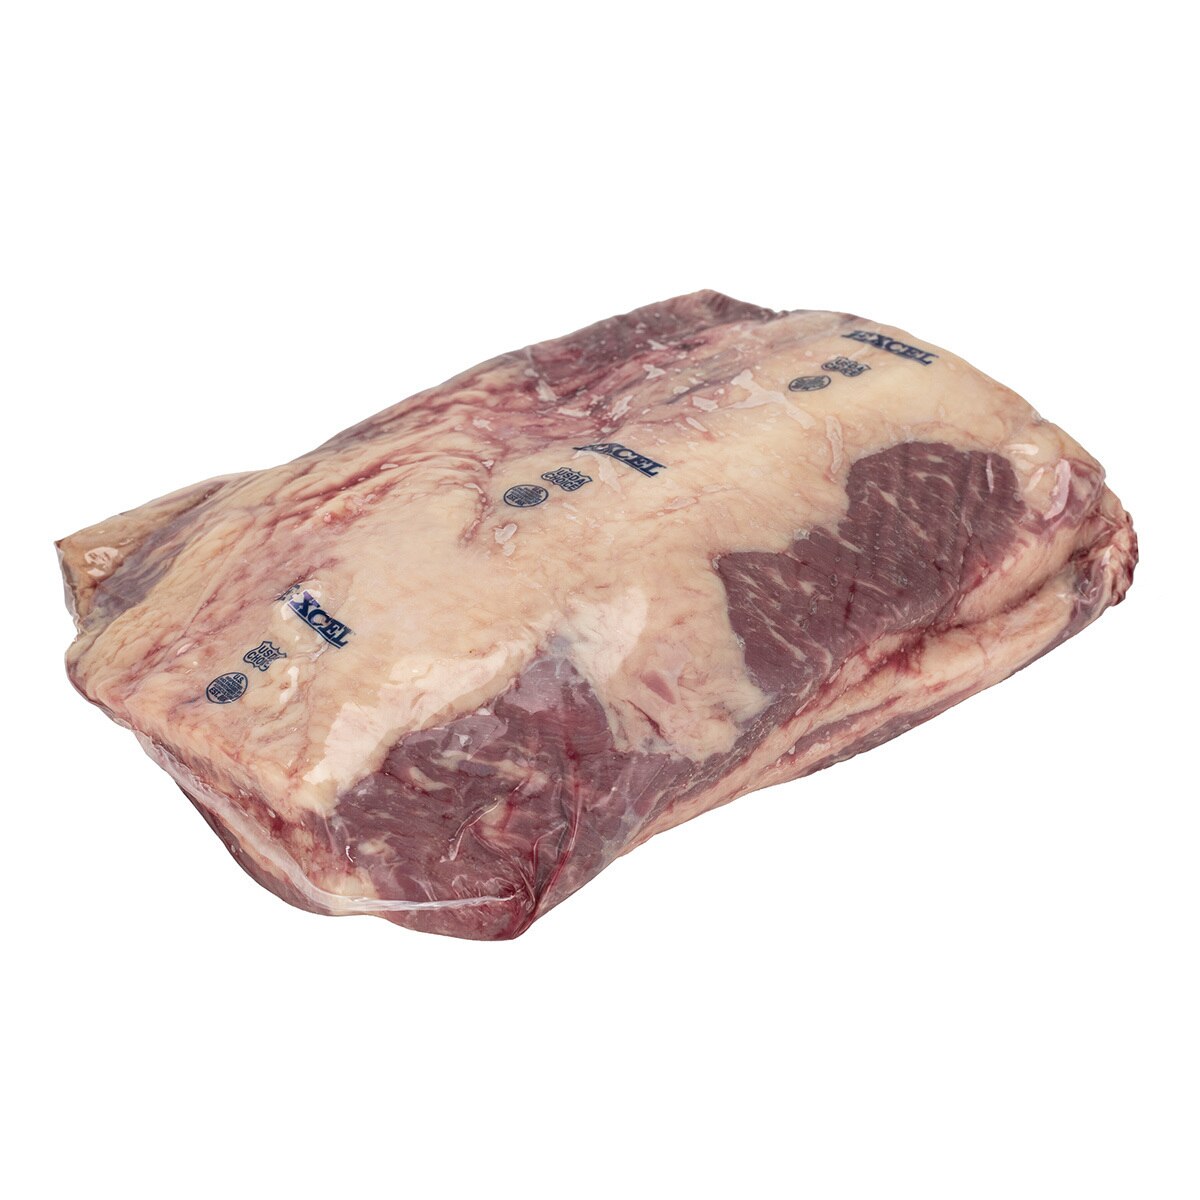 美國特選冷凍胸腹肉(修清牛五花) 22公斤 / 箱